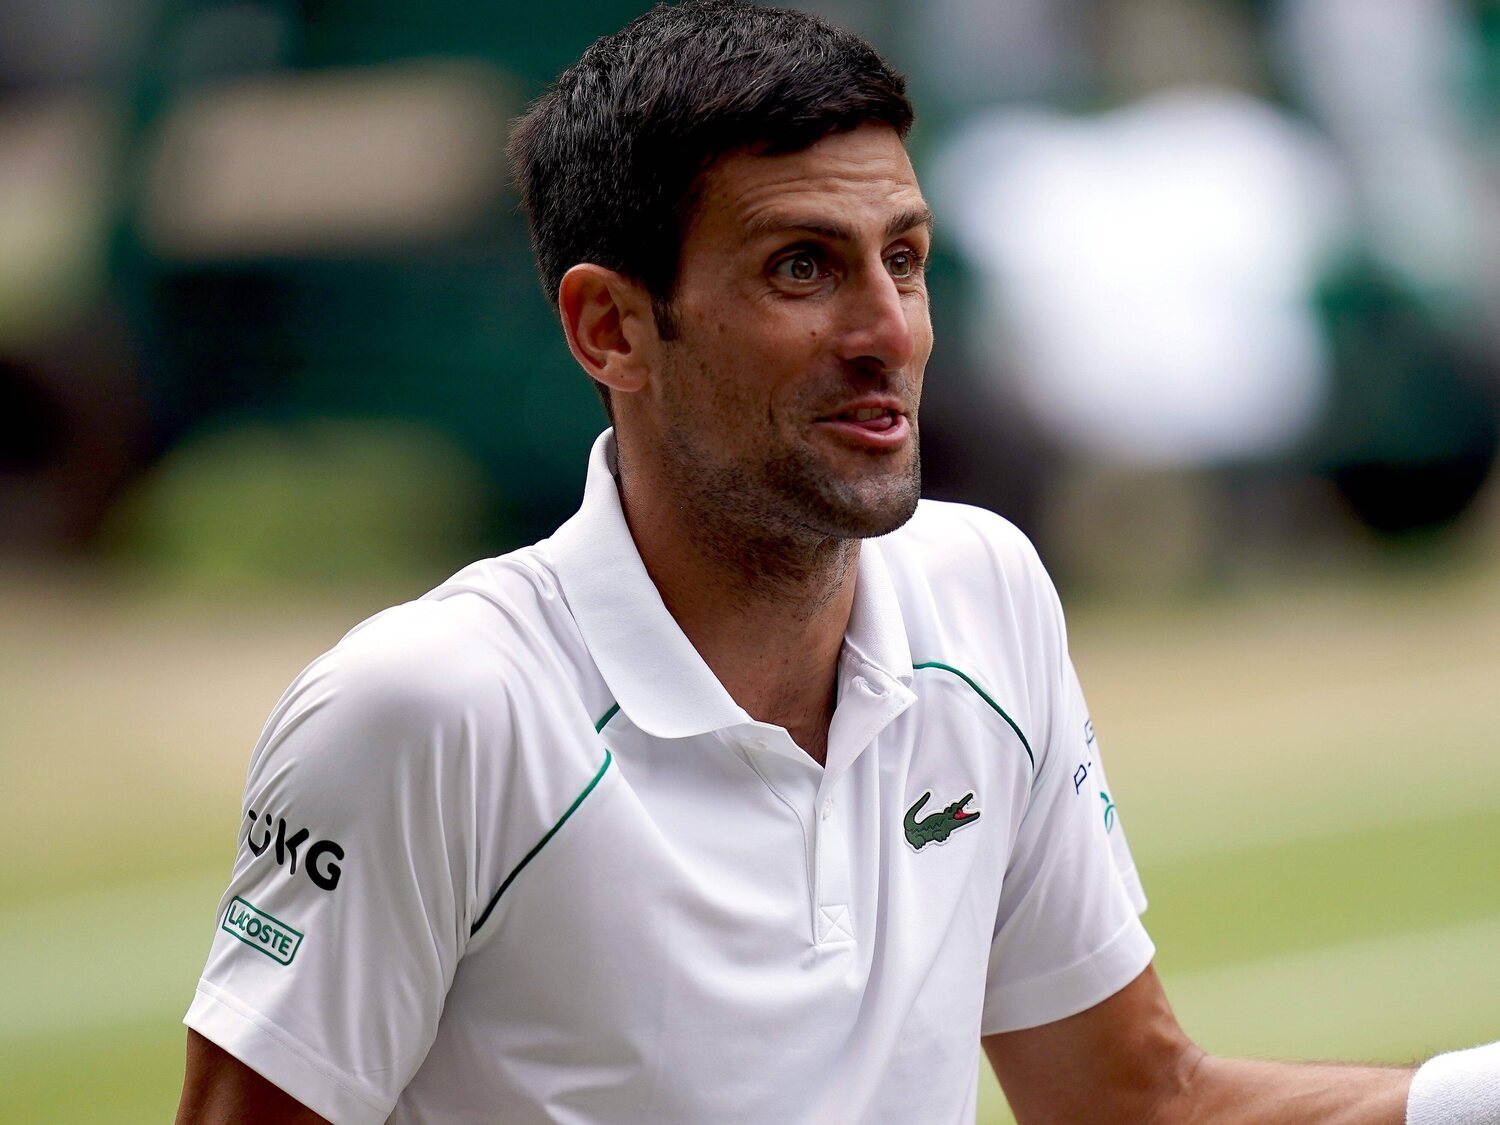 Caso Novak Djokovic: claves del conflicto que enciende a los antivacunas y provoca un terremoto diplomático